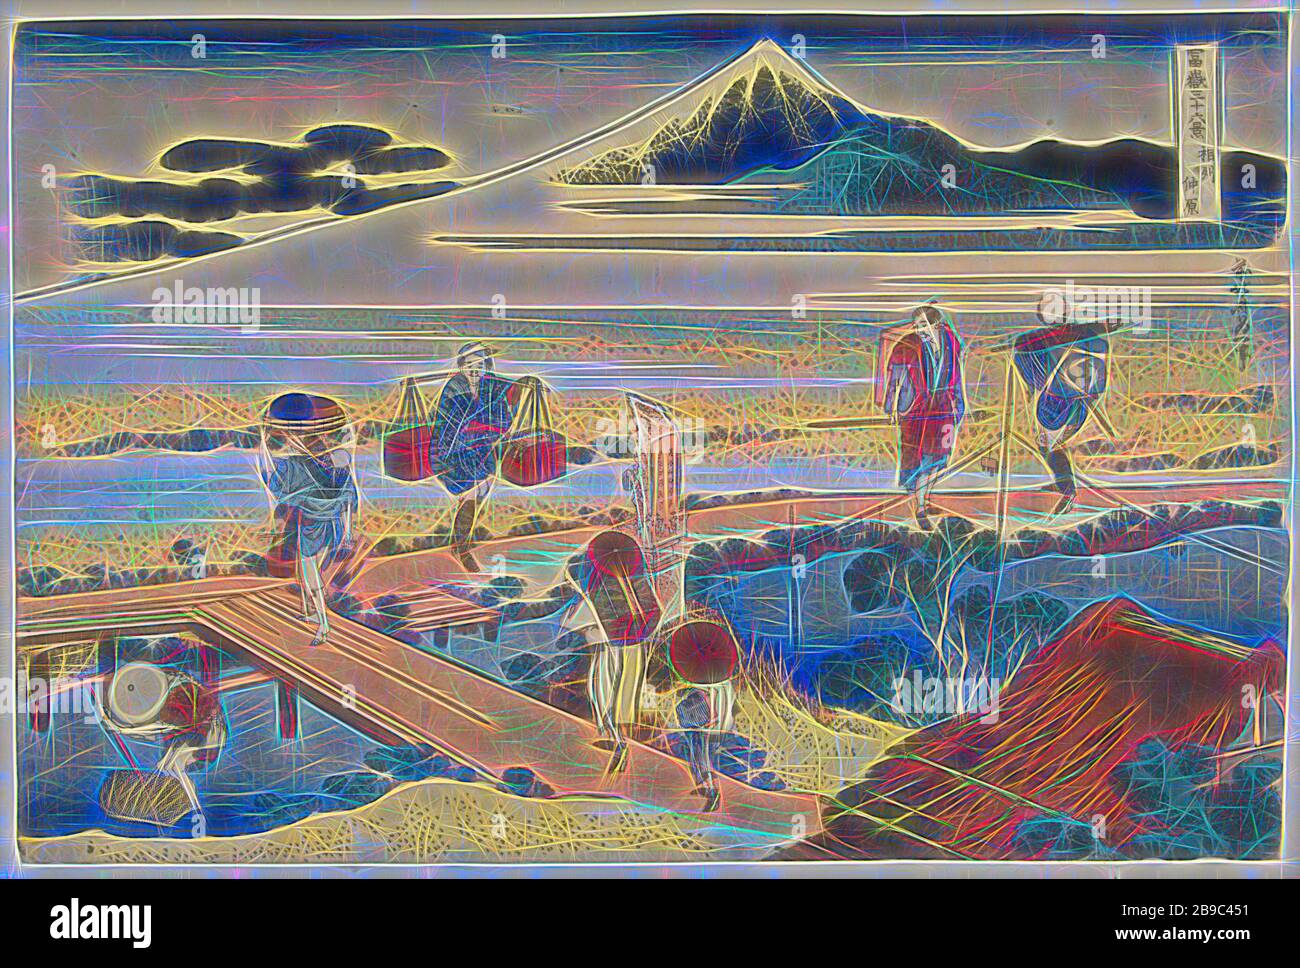 Nakahara in der Provinz Sagami Soshu Nakahara (Titel auf Objekt) 36 Ansichten des Fuji (Serientitel) Fuji Sanjurokkei (Serientitel auf Objekt), Landschaft mit Brücke über den Fluss und Berg Fuji, der im Hintergrund von Nebelbänken aufsteigt. Im Vordergrund Reisende, eine Kauffrau, eine Frau mit Kind und im Fluss ein Fischer, Fuji, der Berg, Katsushika Hokusai (auf Objekt erwähnt), 1833-65, Papier, Farbholzschnitt, h 256 mm × w 382 mm, neu von Gibon vorgestellt, Design von warmem Glanz von Helligkeit und Lichtstrahlen. Klassische Kunst mit moderner Note neu erfunden. Fotografie inspiriert Stockfoto